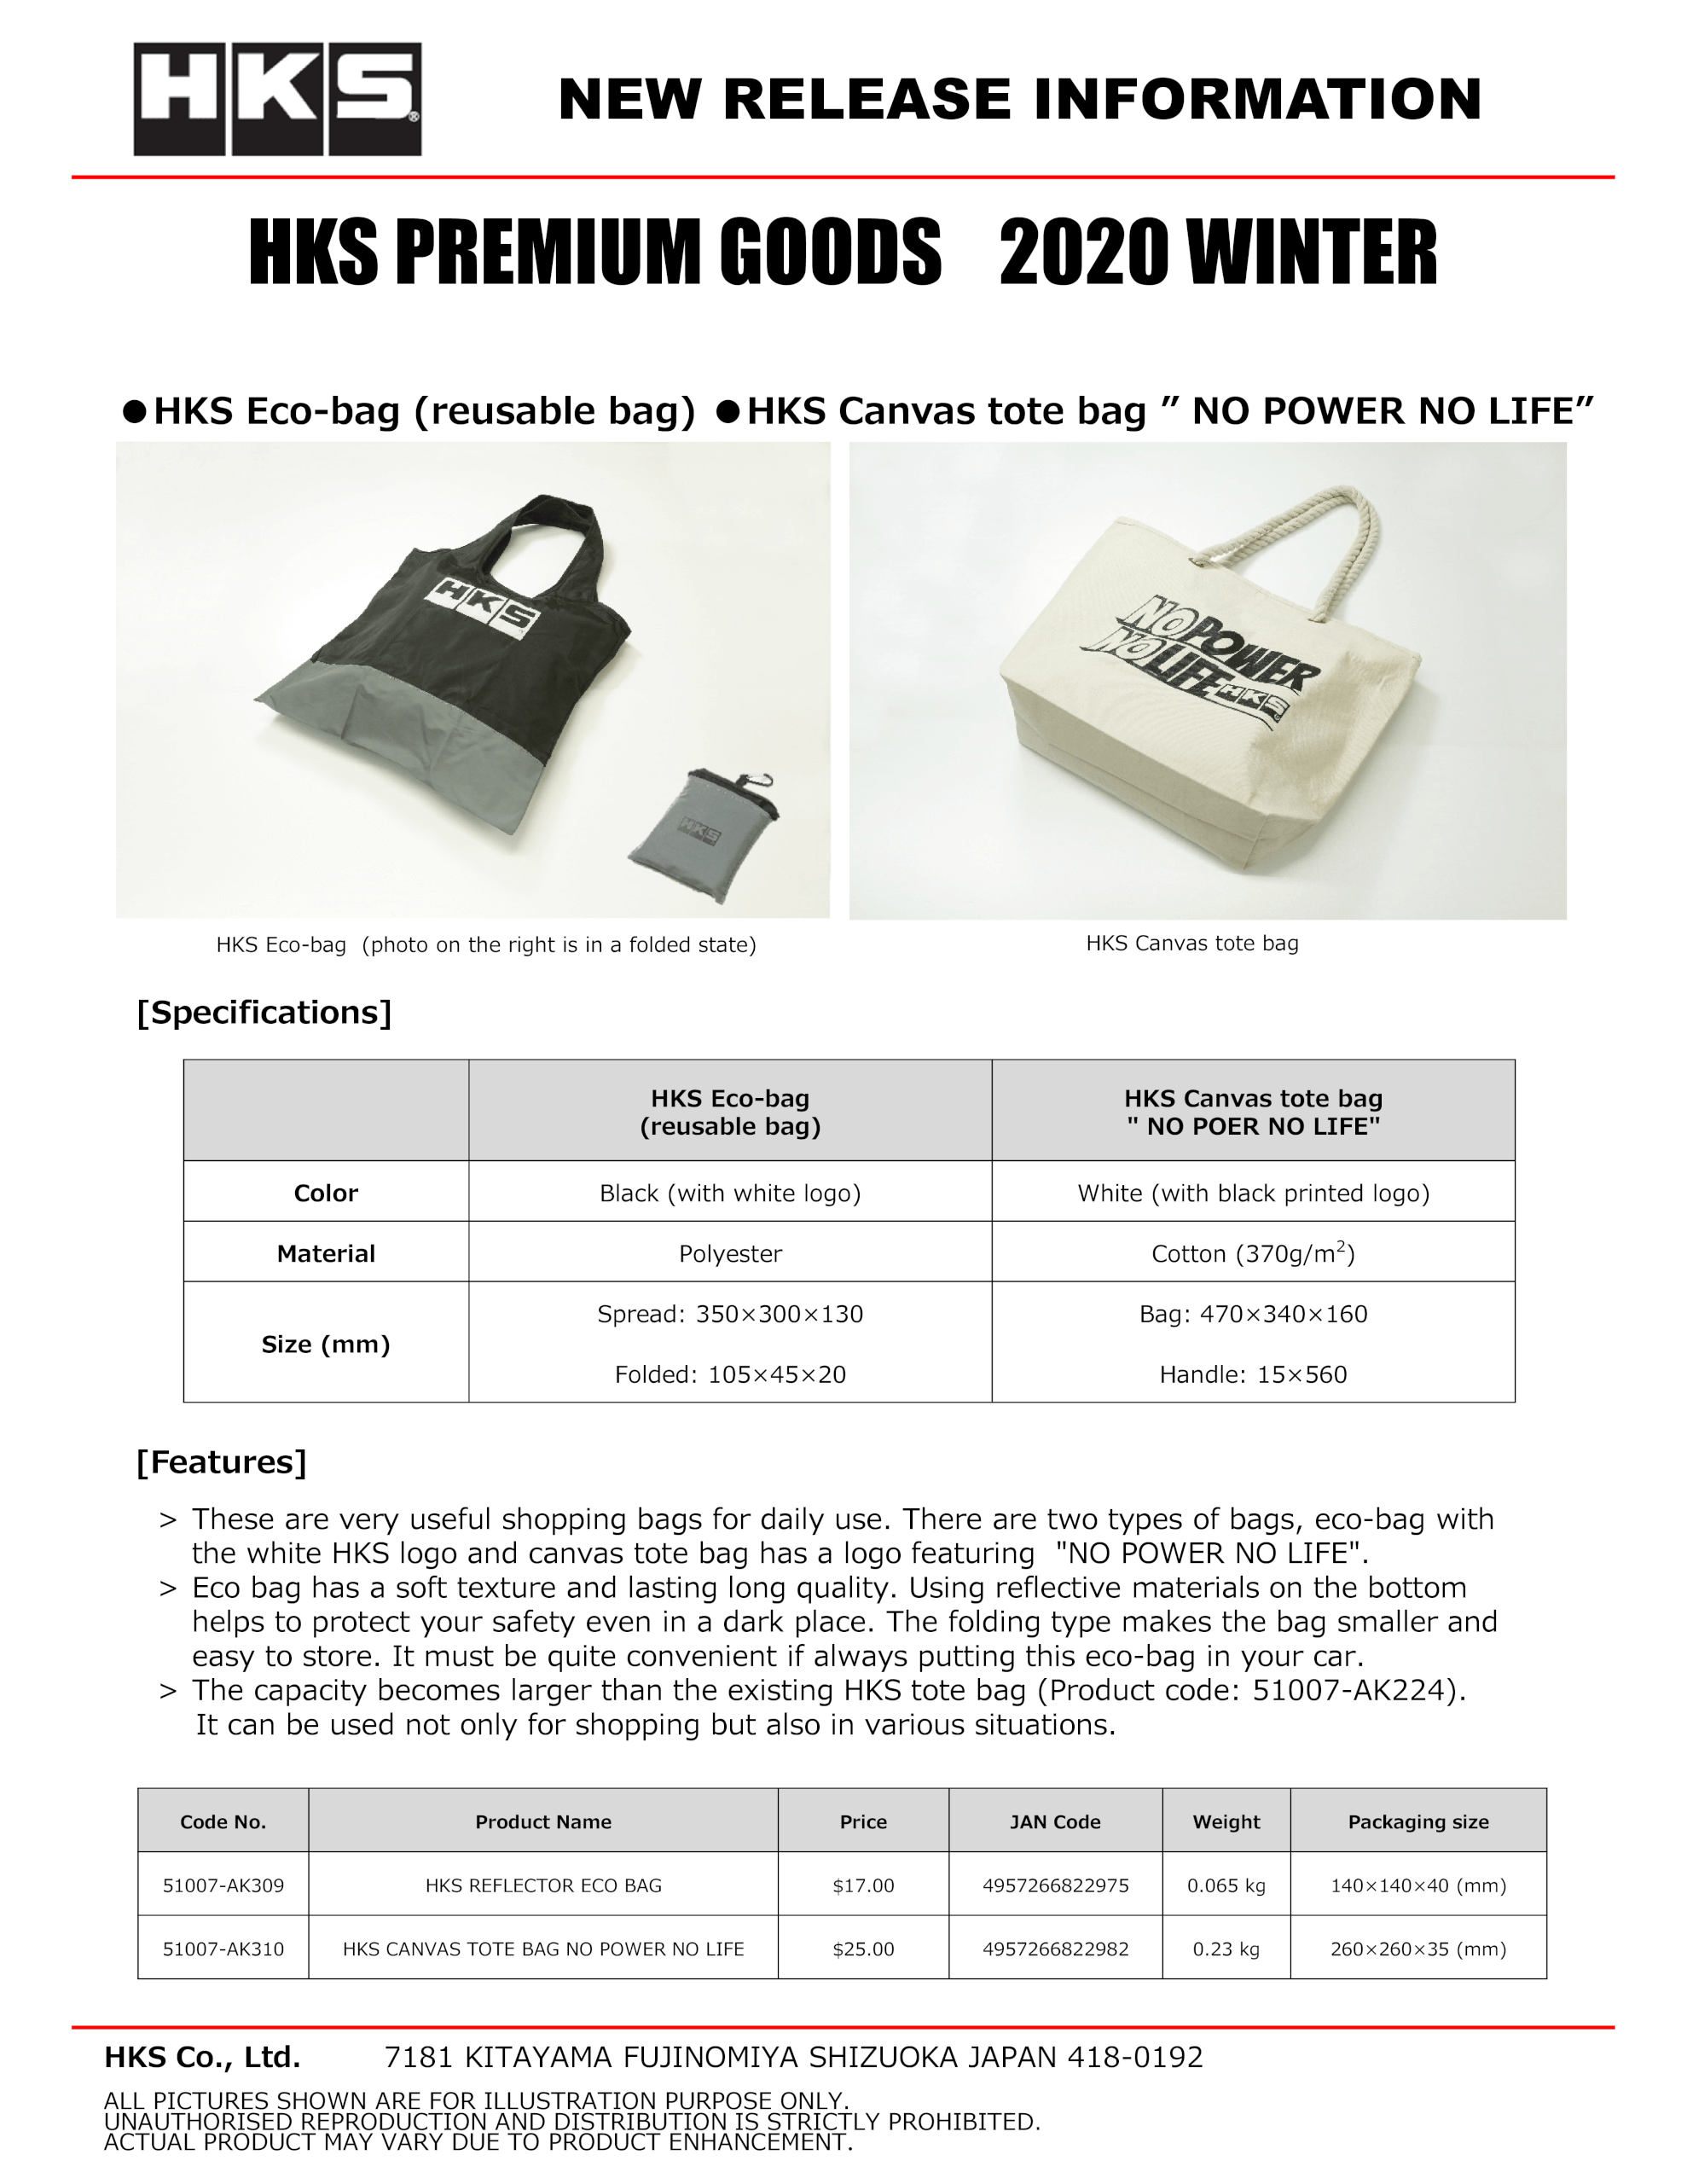 51007-AK309, 310 HKS PREMIUM GOODS 2020 WINTER_Ecobag_Canvas tote bag.png